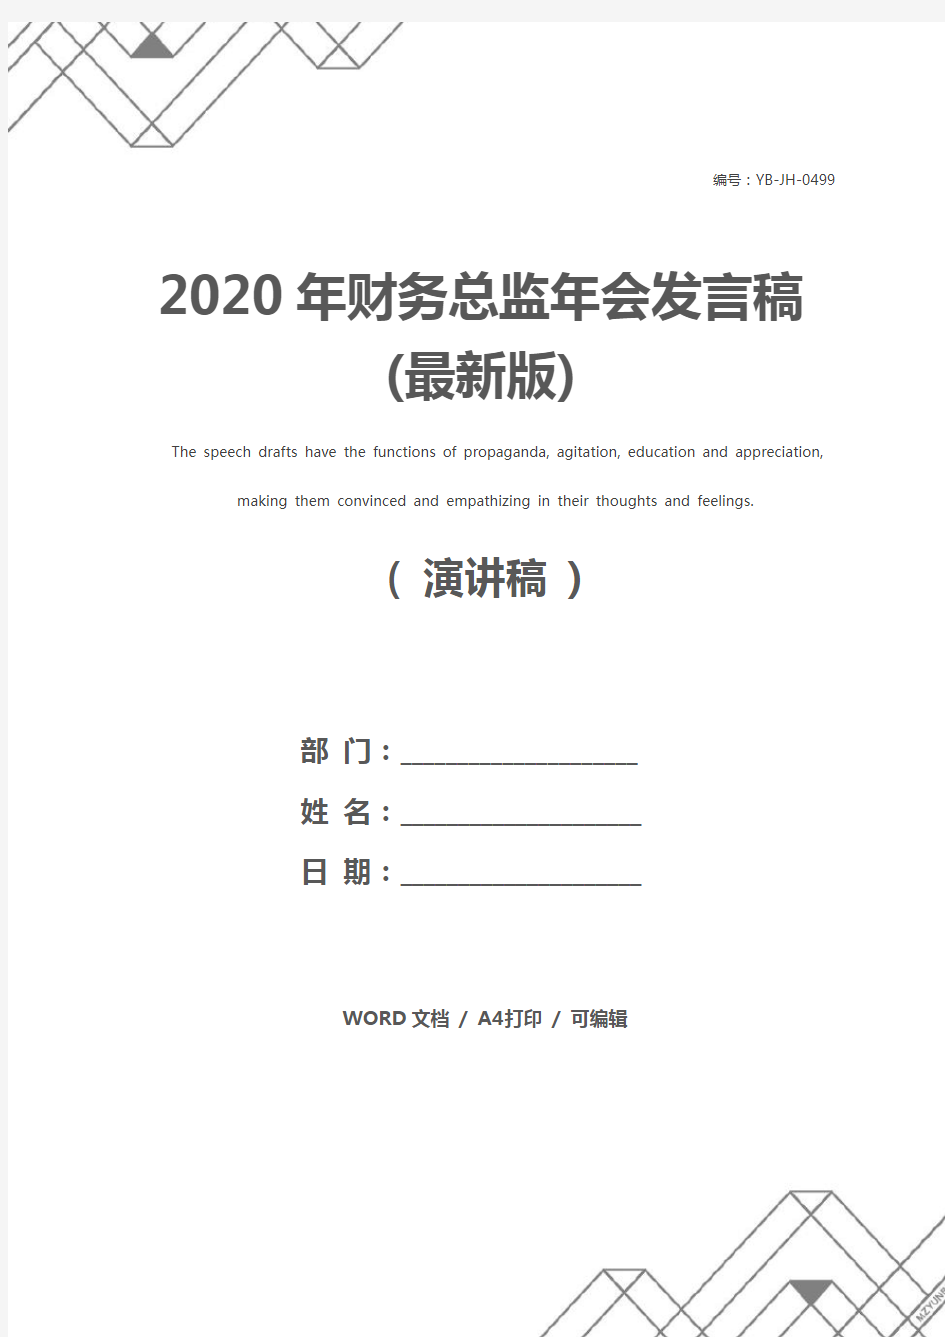 2020年财务总监年会发言稿(最新版)